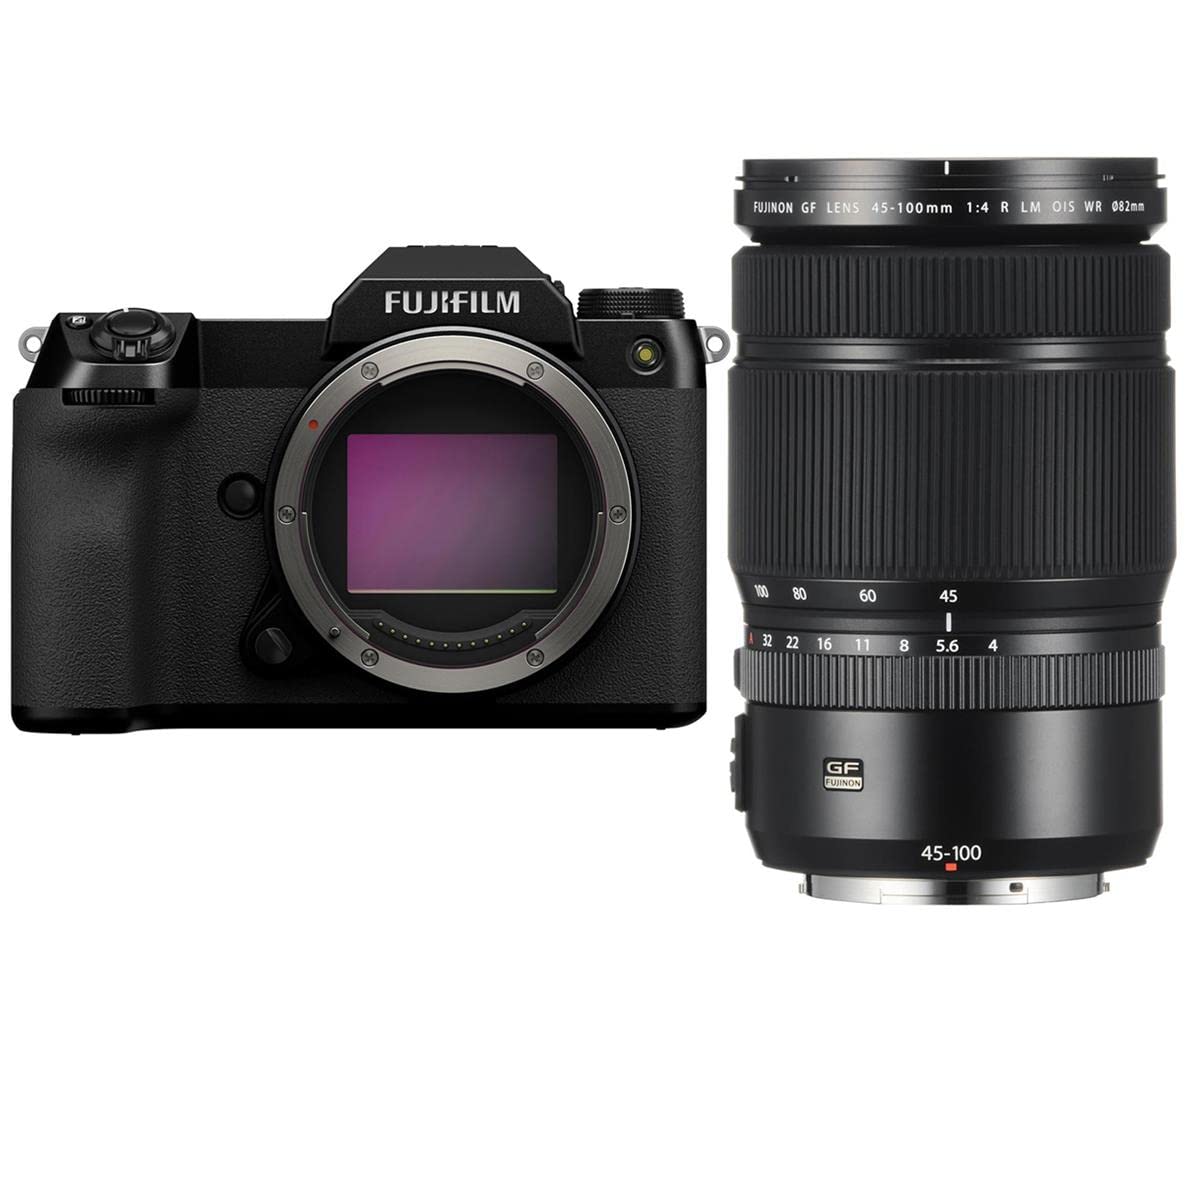 GFX50S II Medium Format Camera Body with GF 45-100mm F4 R LM WR Lens